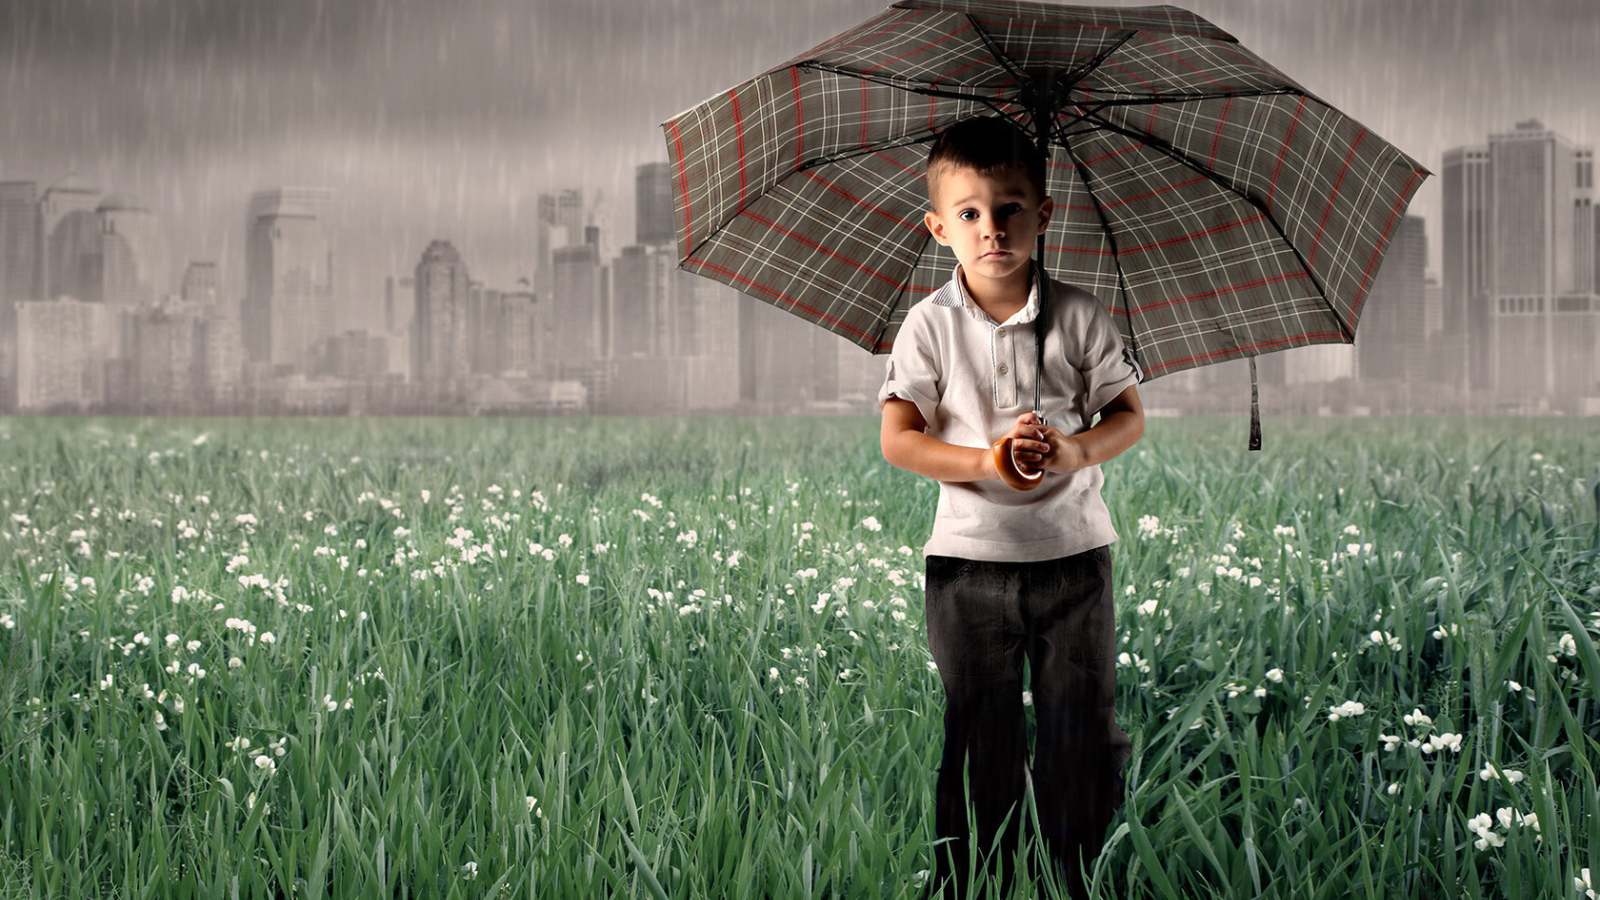 A child in the rain